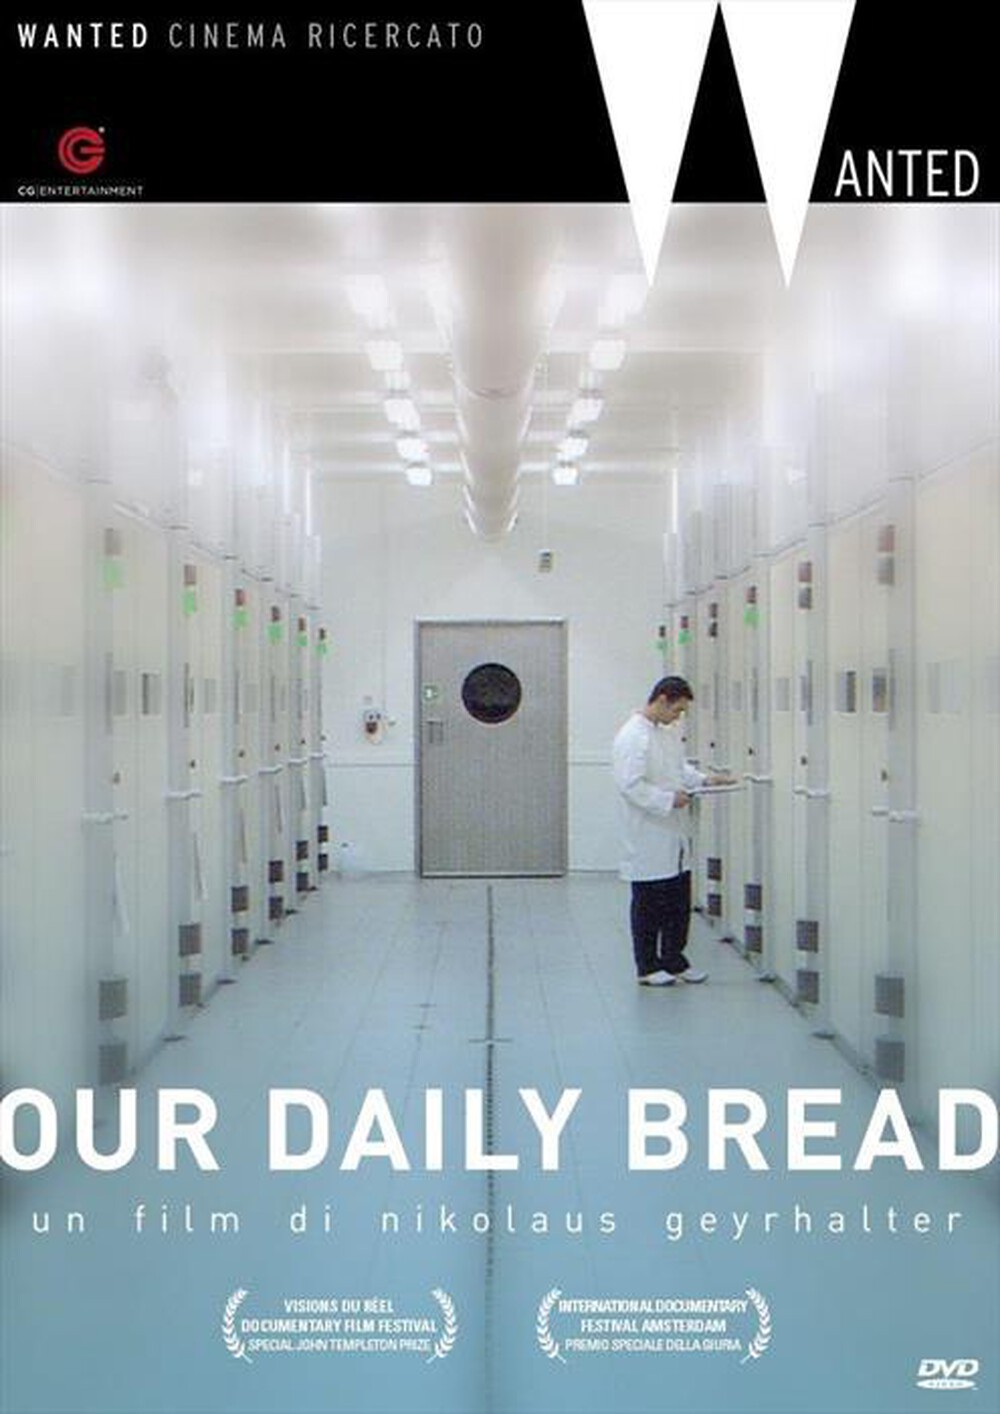 "CECCHI GORI - Our Daily Bread"